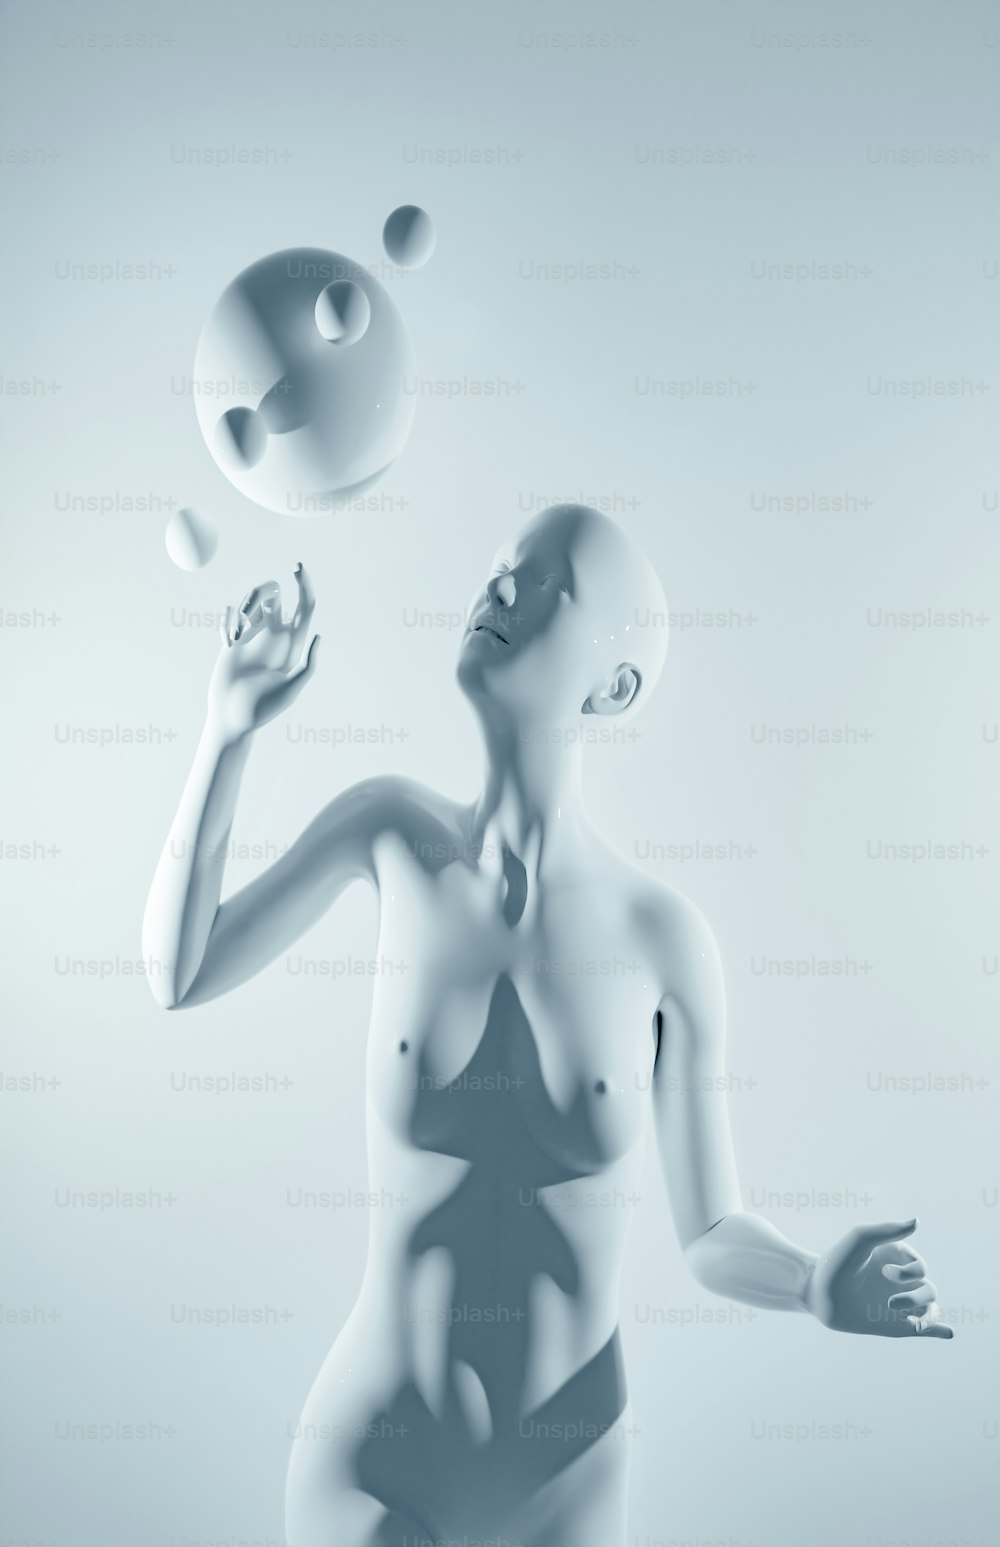 Une femme en maillot de bain jonglant avec des balles